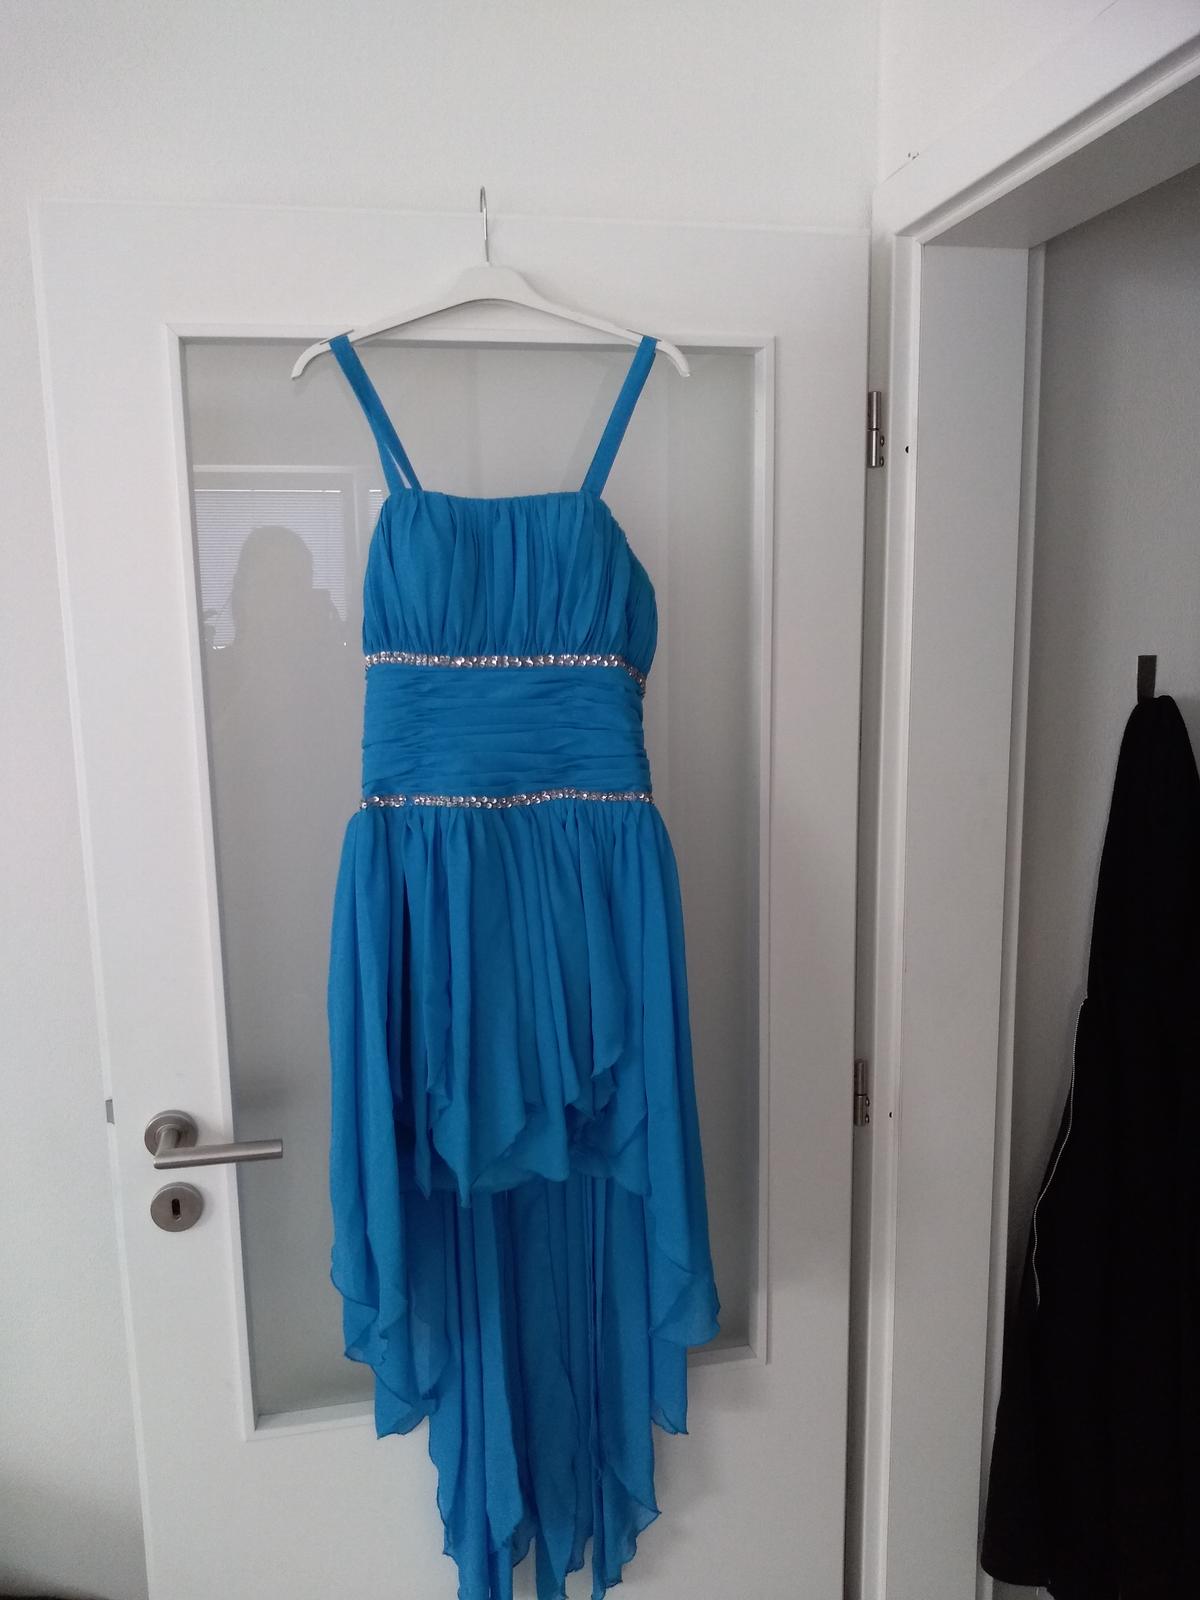 Modré rozevláté šaty - Obrázek č. 1